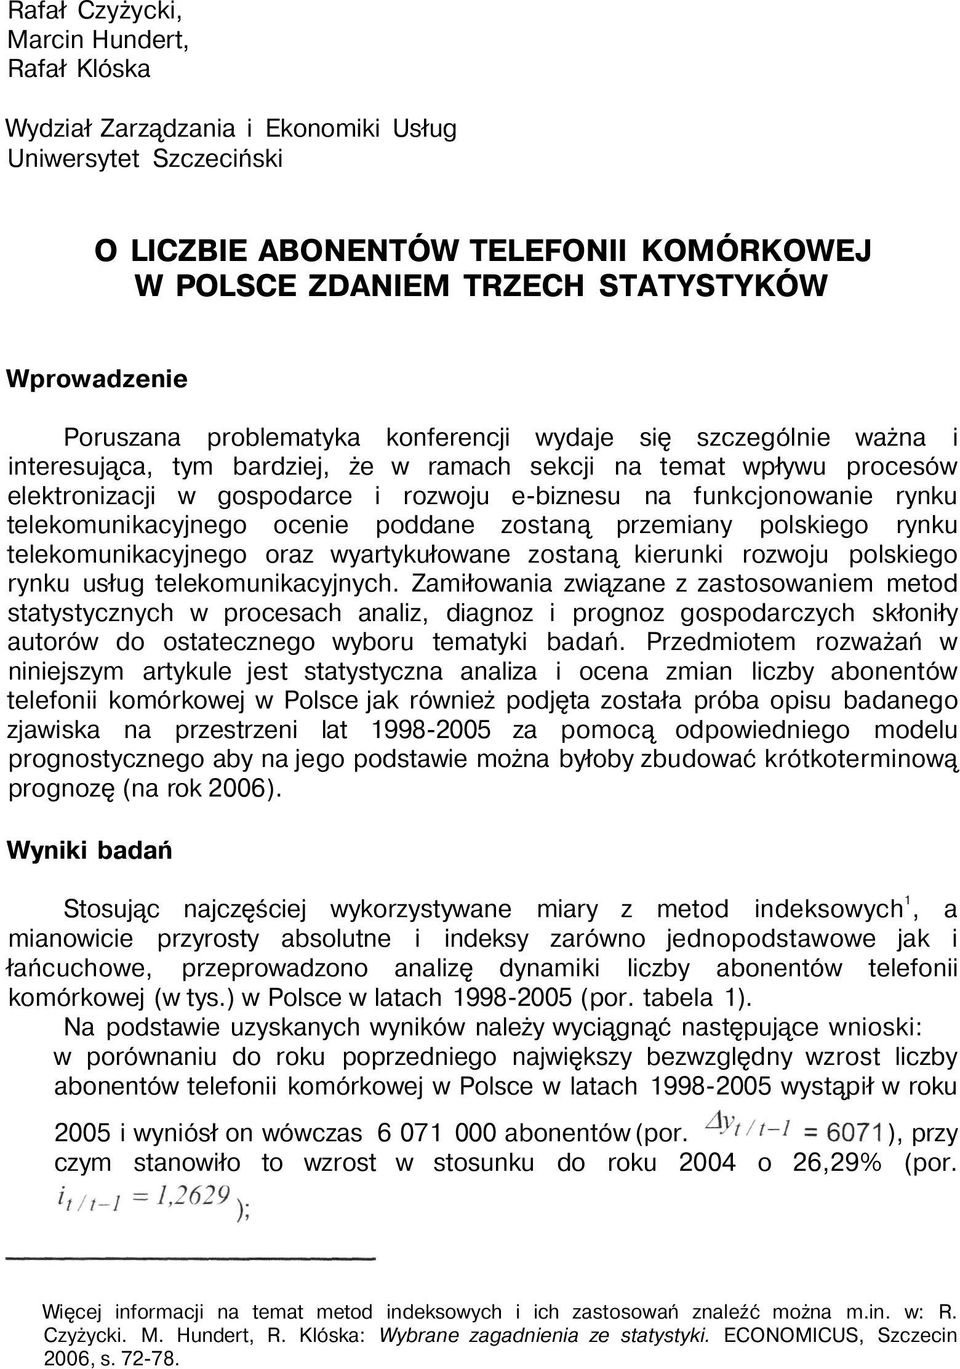 funkcjonowanie rynku telekomunikacyjnego ocenie poddane zostaną przemiany polskiego rynku telekomunikacyjnego oraz wyartykułowane zostaną kierunki rozwoju polskiego rynku usług telekomunikacyjnych.